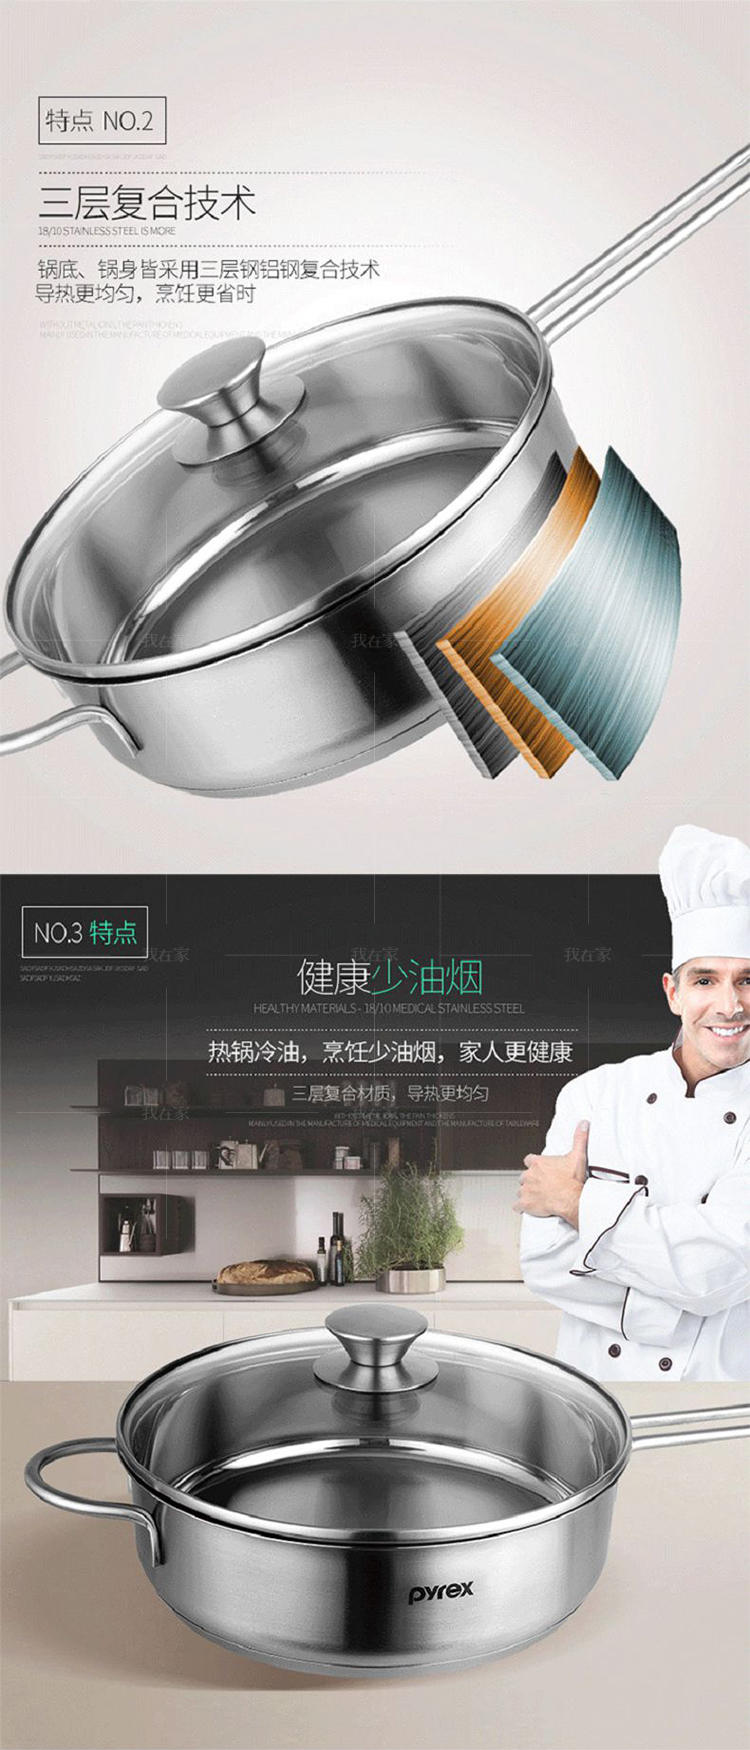 康宁餐具系列康宁不锈钢煎炒锅的详细介绍